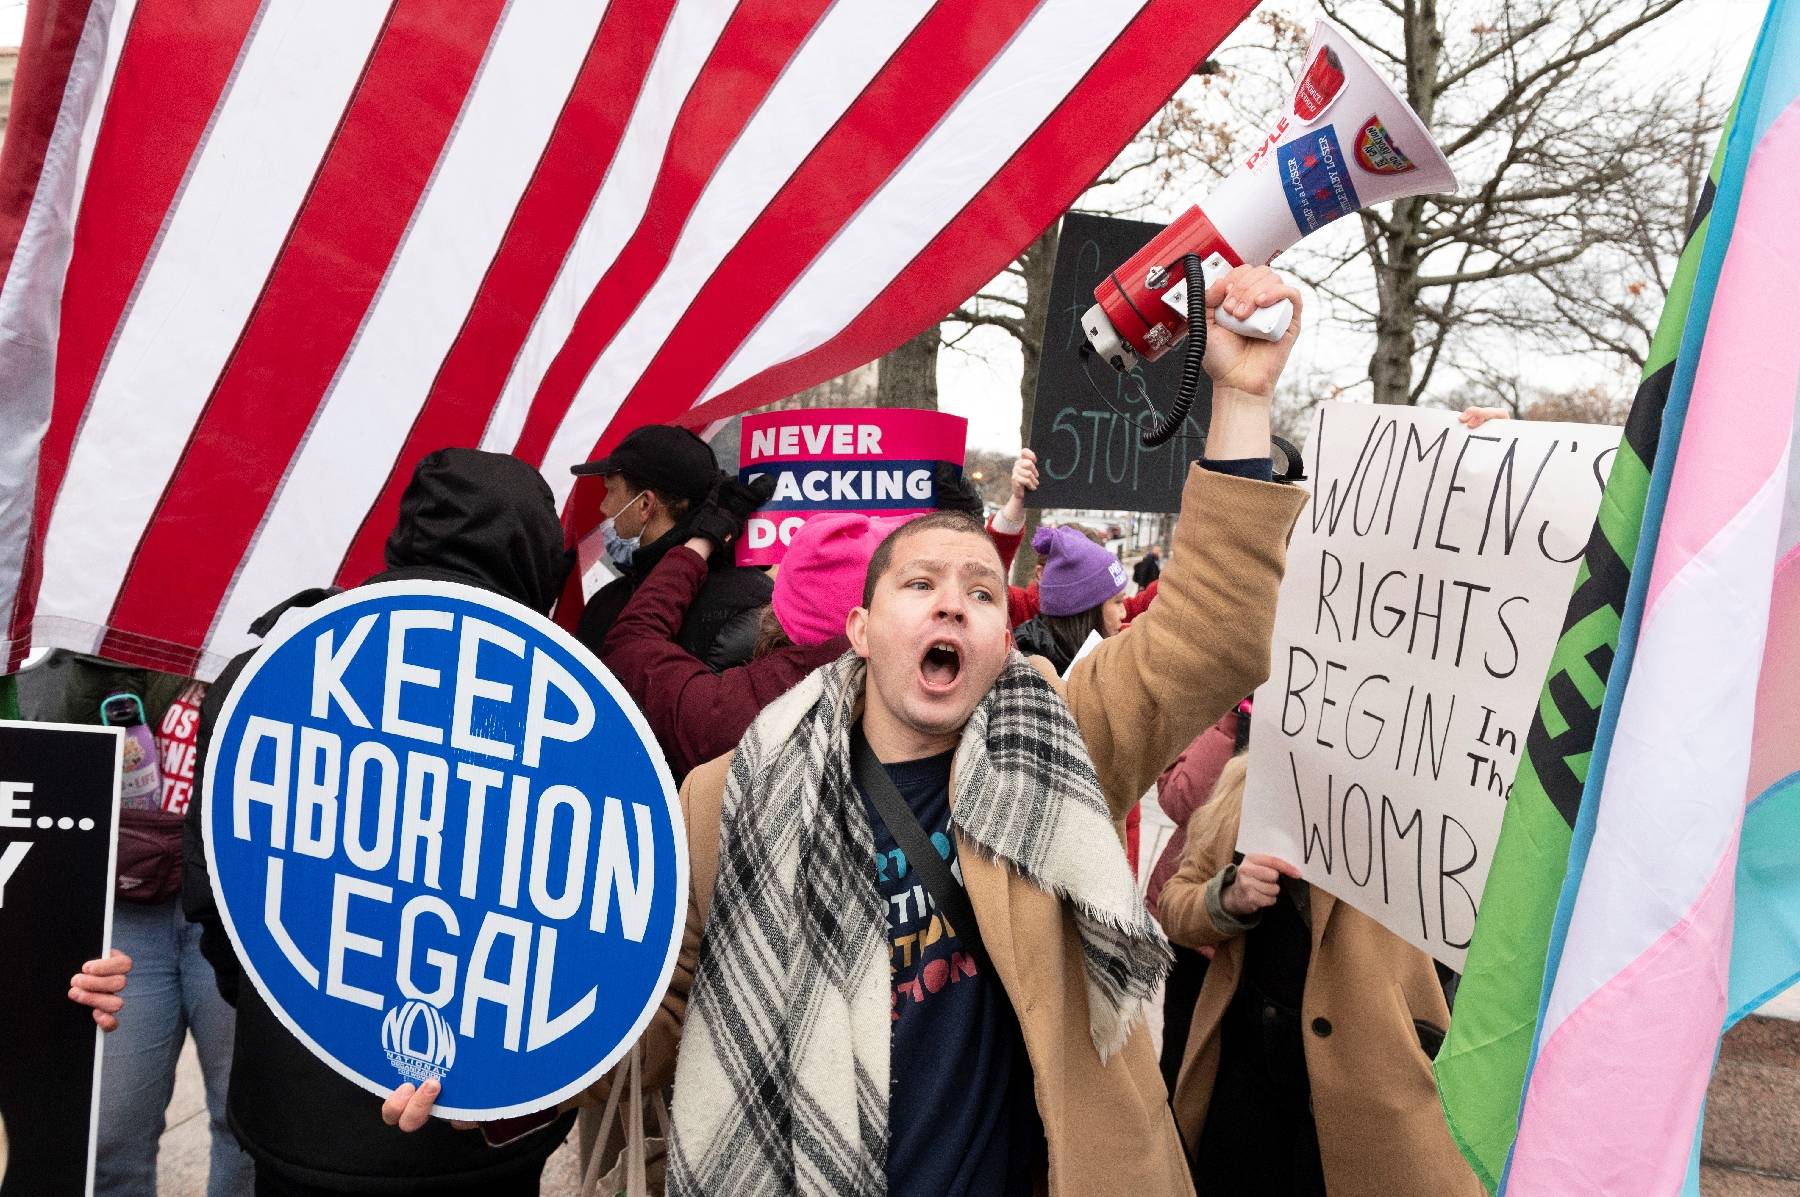 Les partisans du droit à l'avortement mobilisés aux Etats-Unis pour un anniversaire symbolique